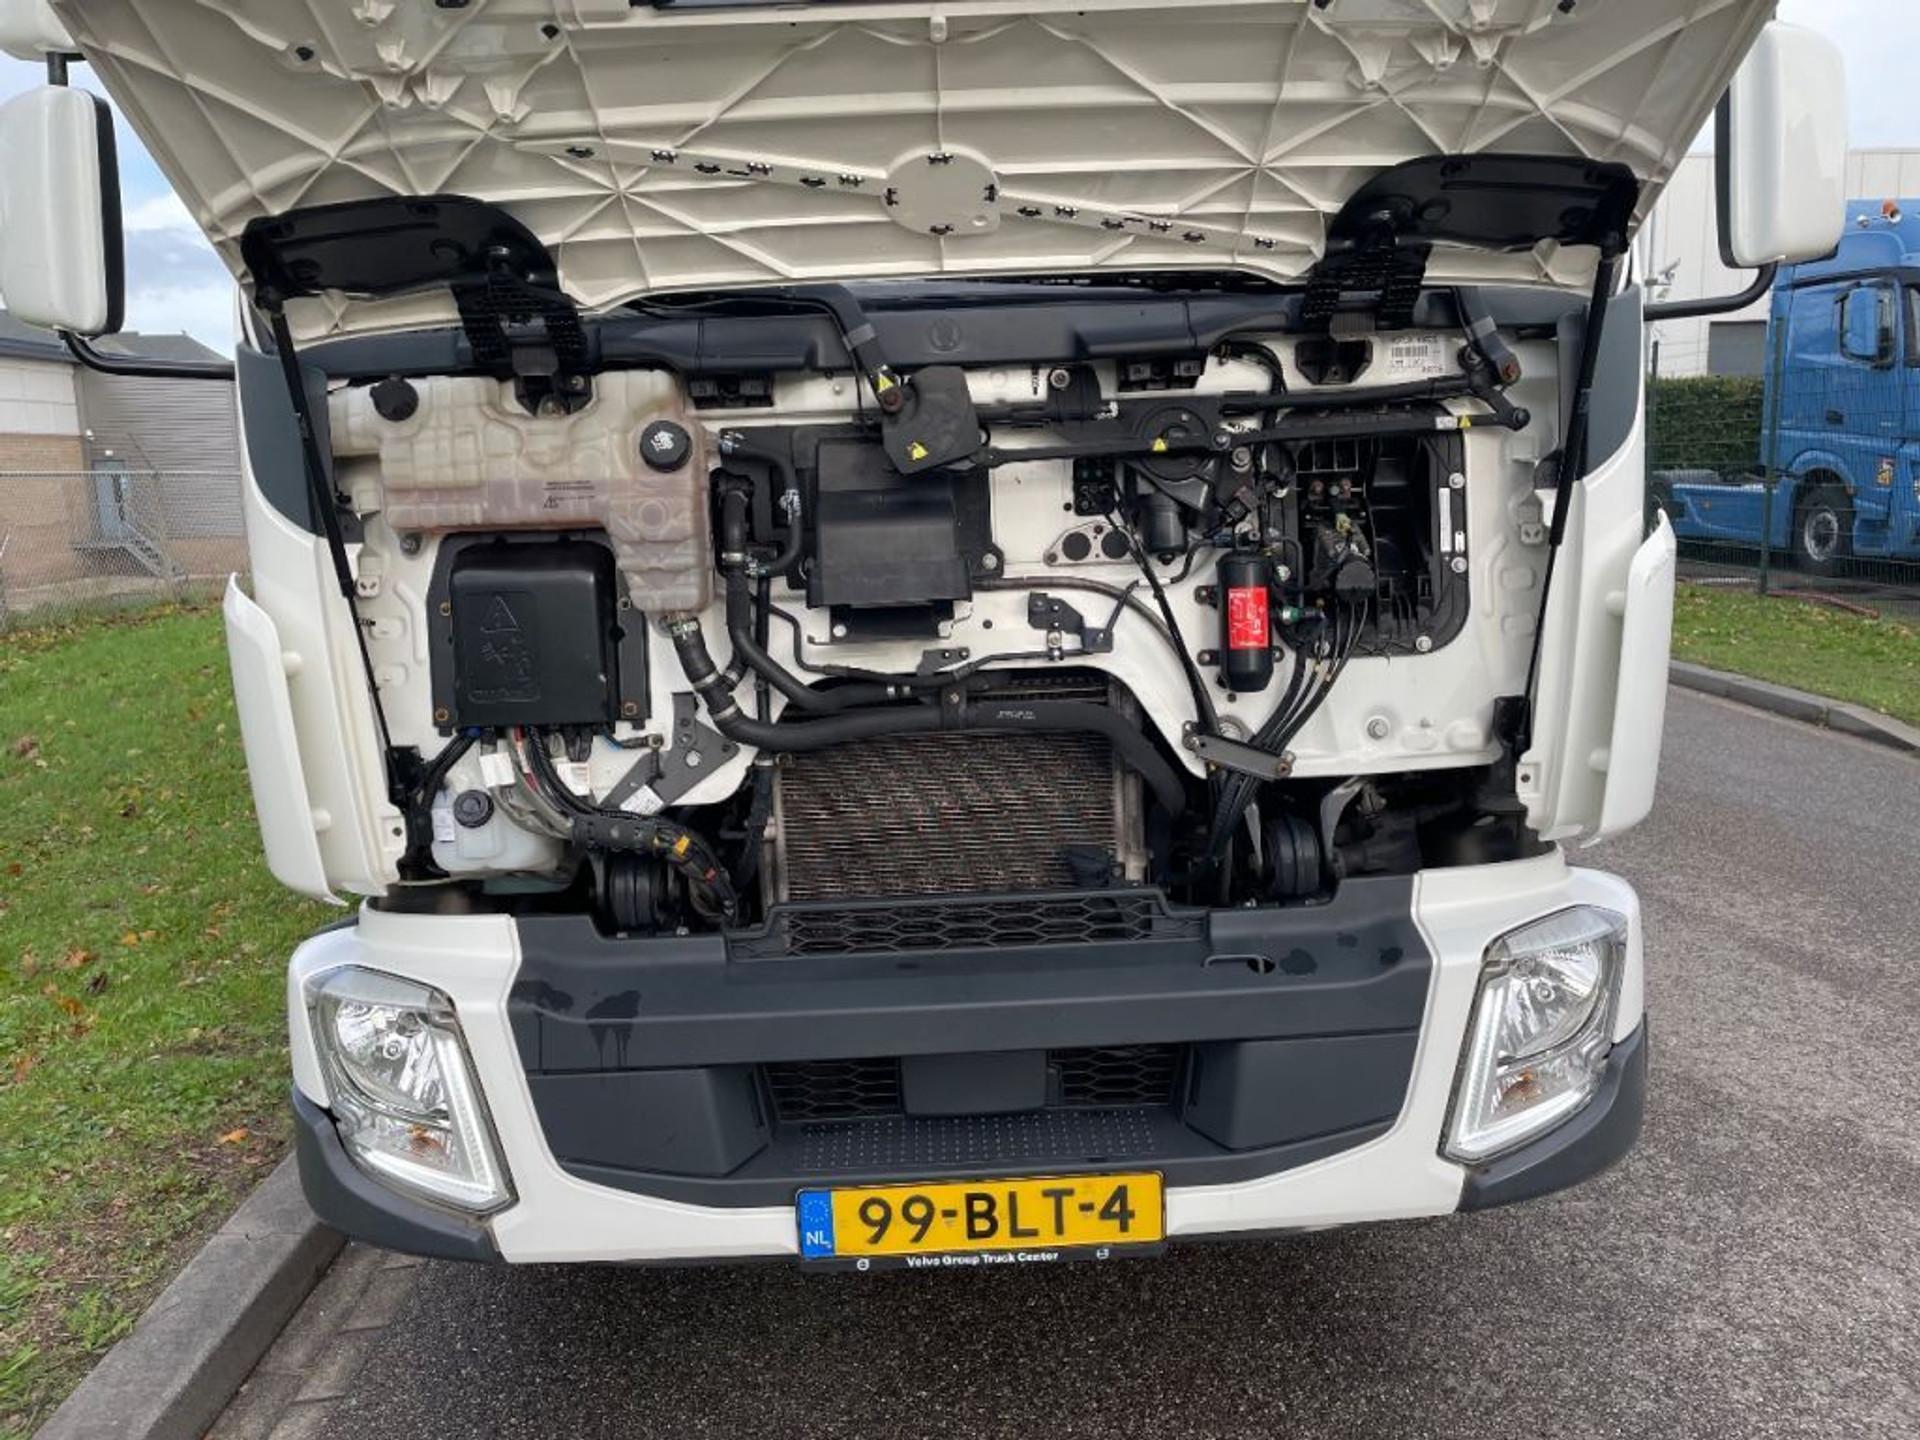 Foto 17 van Volvo FL verhuiswagen 2019 only 133.000 km